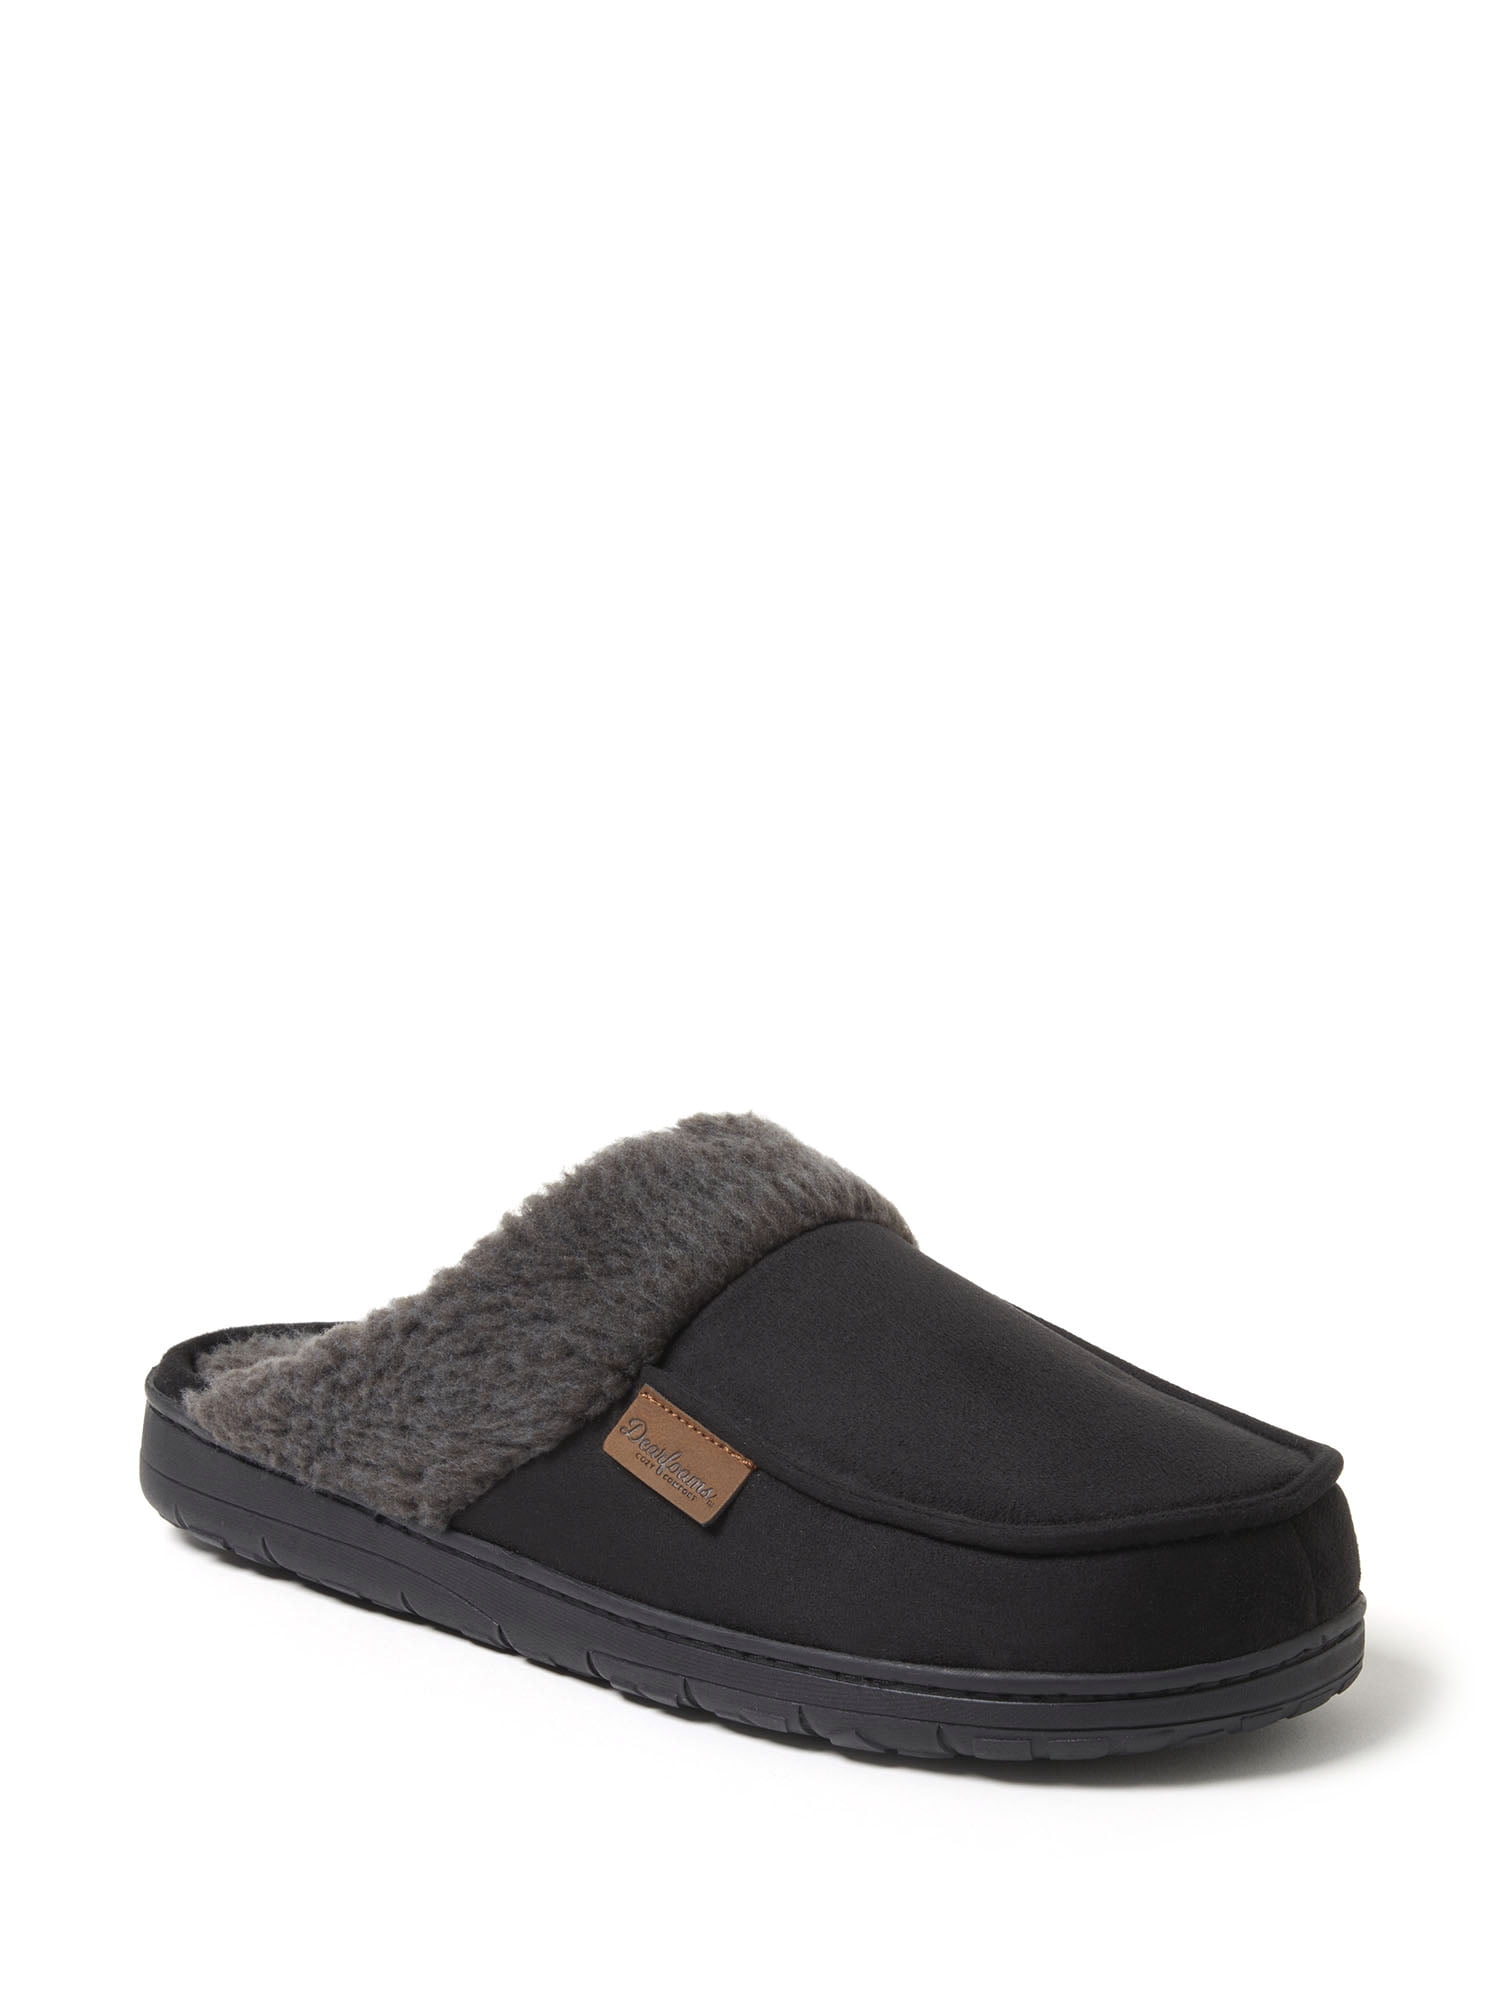 Dearfoams Cozy Comfort Men's Quilted Jersey Slide Slippers - Walmart.com